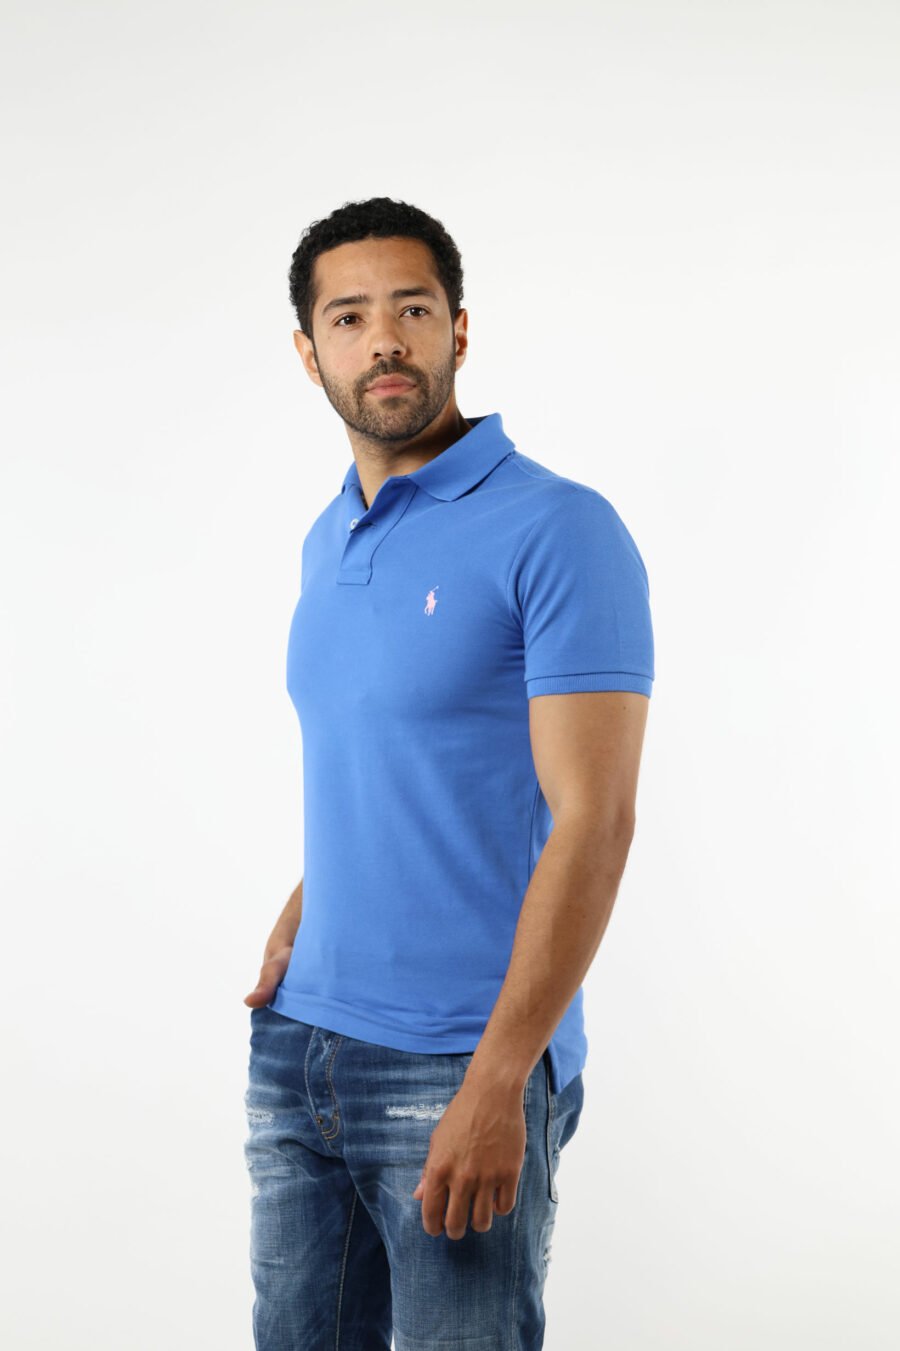 Camiseta azul y rosa con minilogo "polo" - 111230